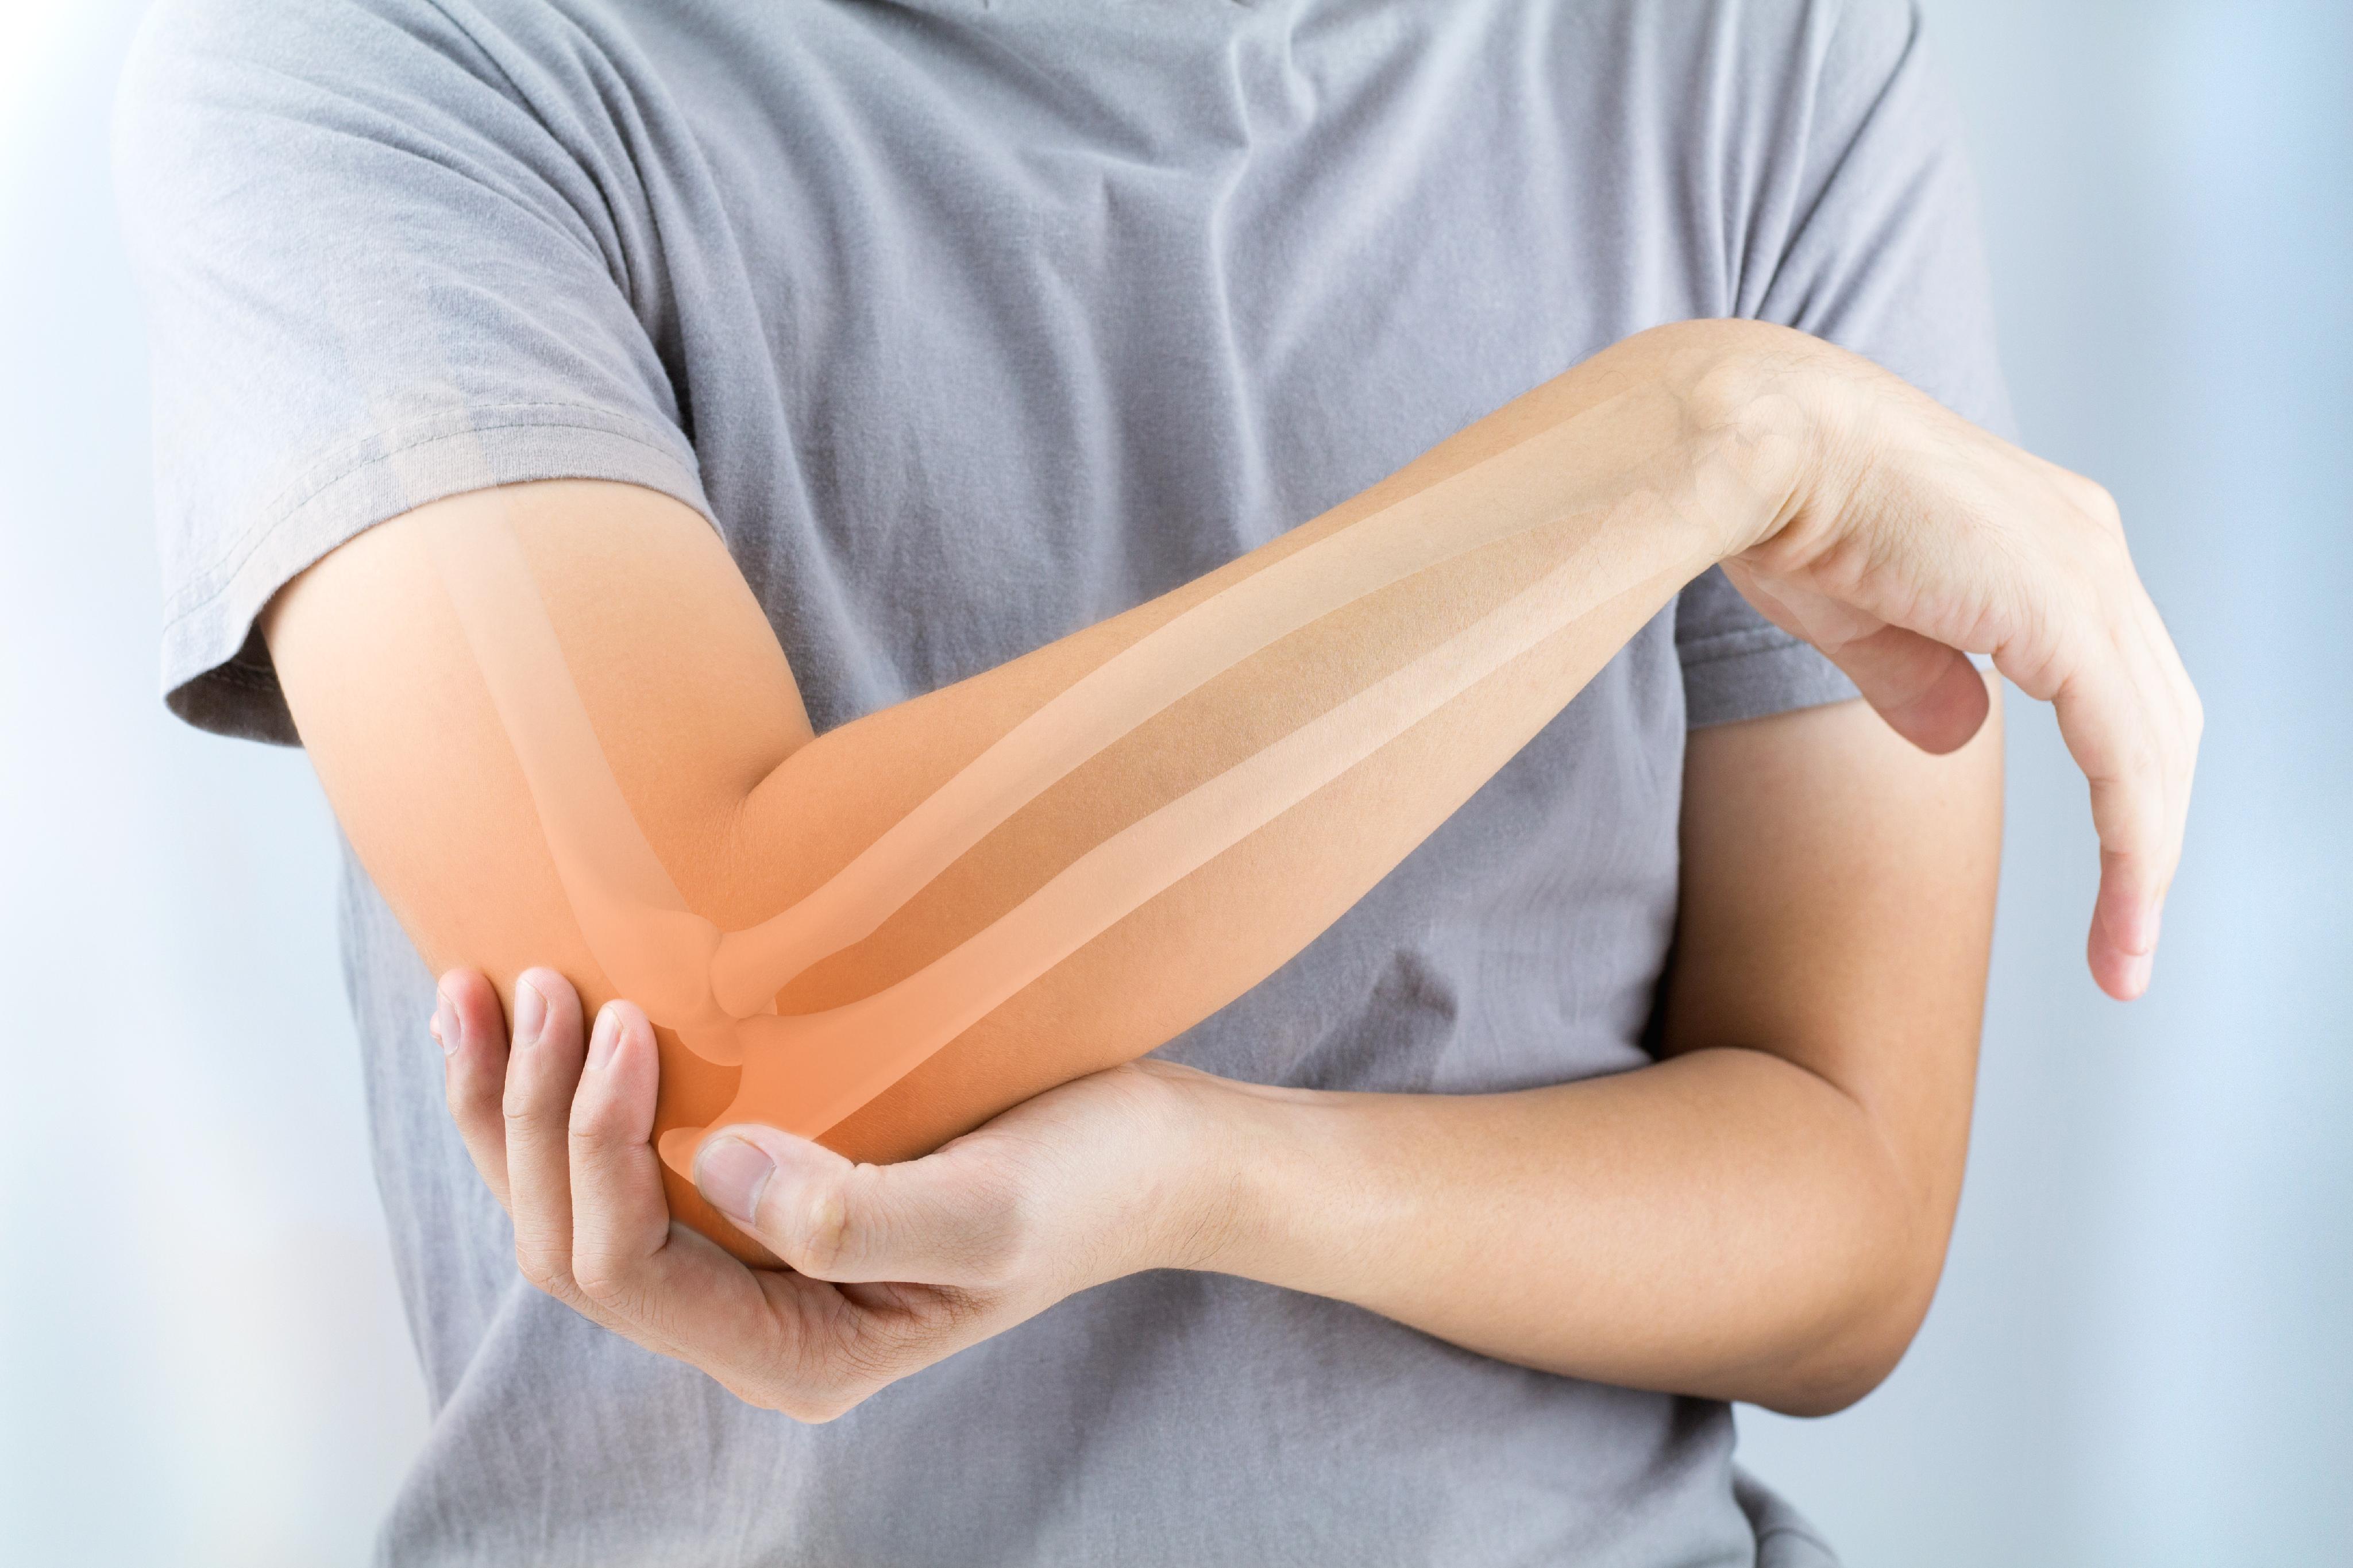 elbow tendon injury symptoms